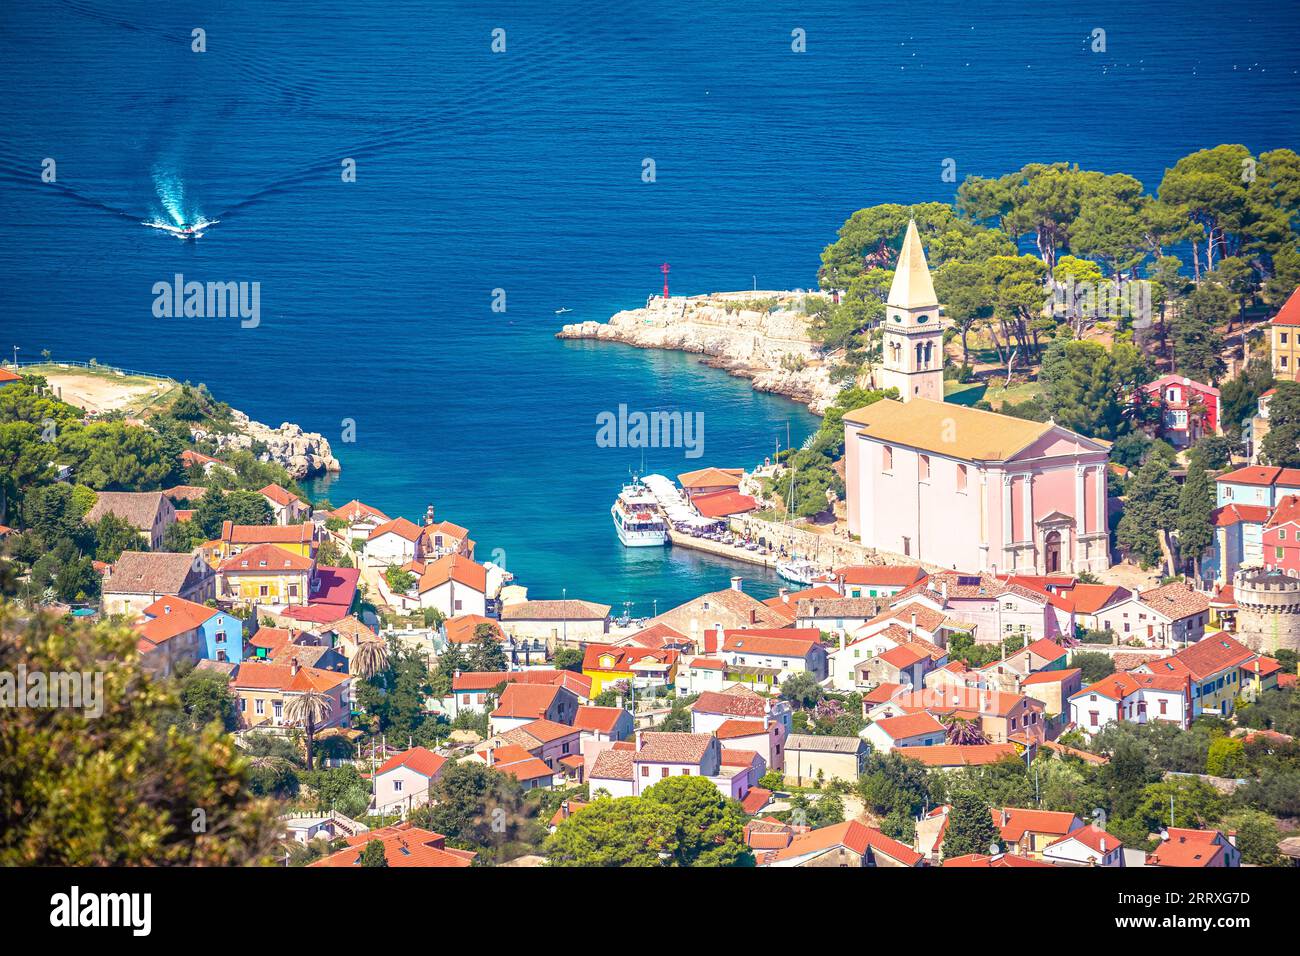 Veli losinj vue aérienne panoramique, île de Losinj, archipel de Croatie Banque D'Images